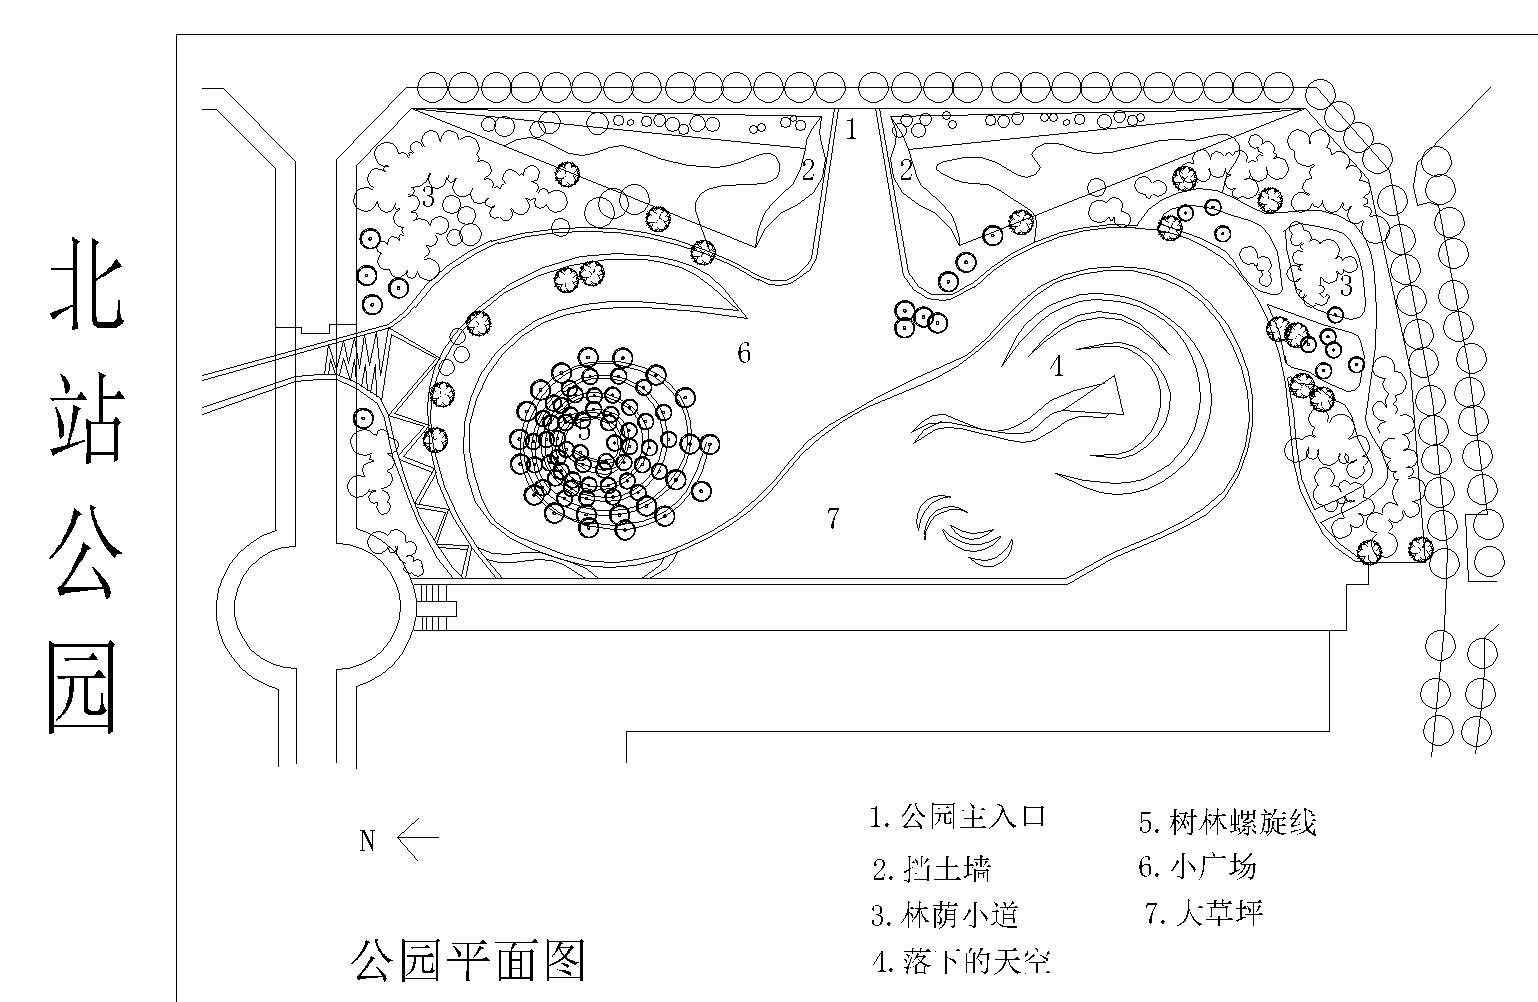 黄庄游园鸟瞰图-颢盛园林景观设计室